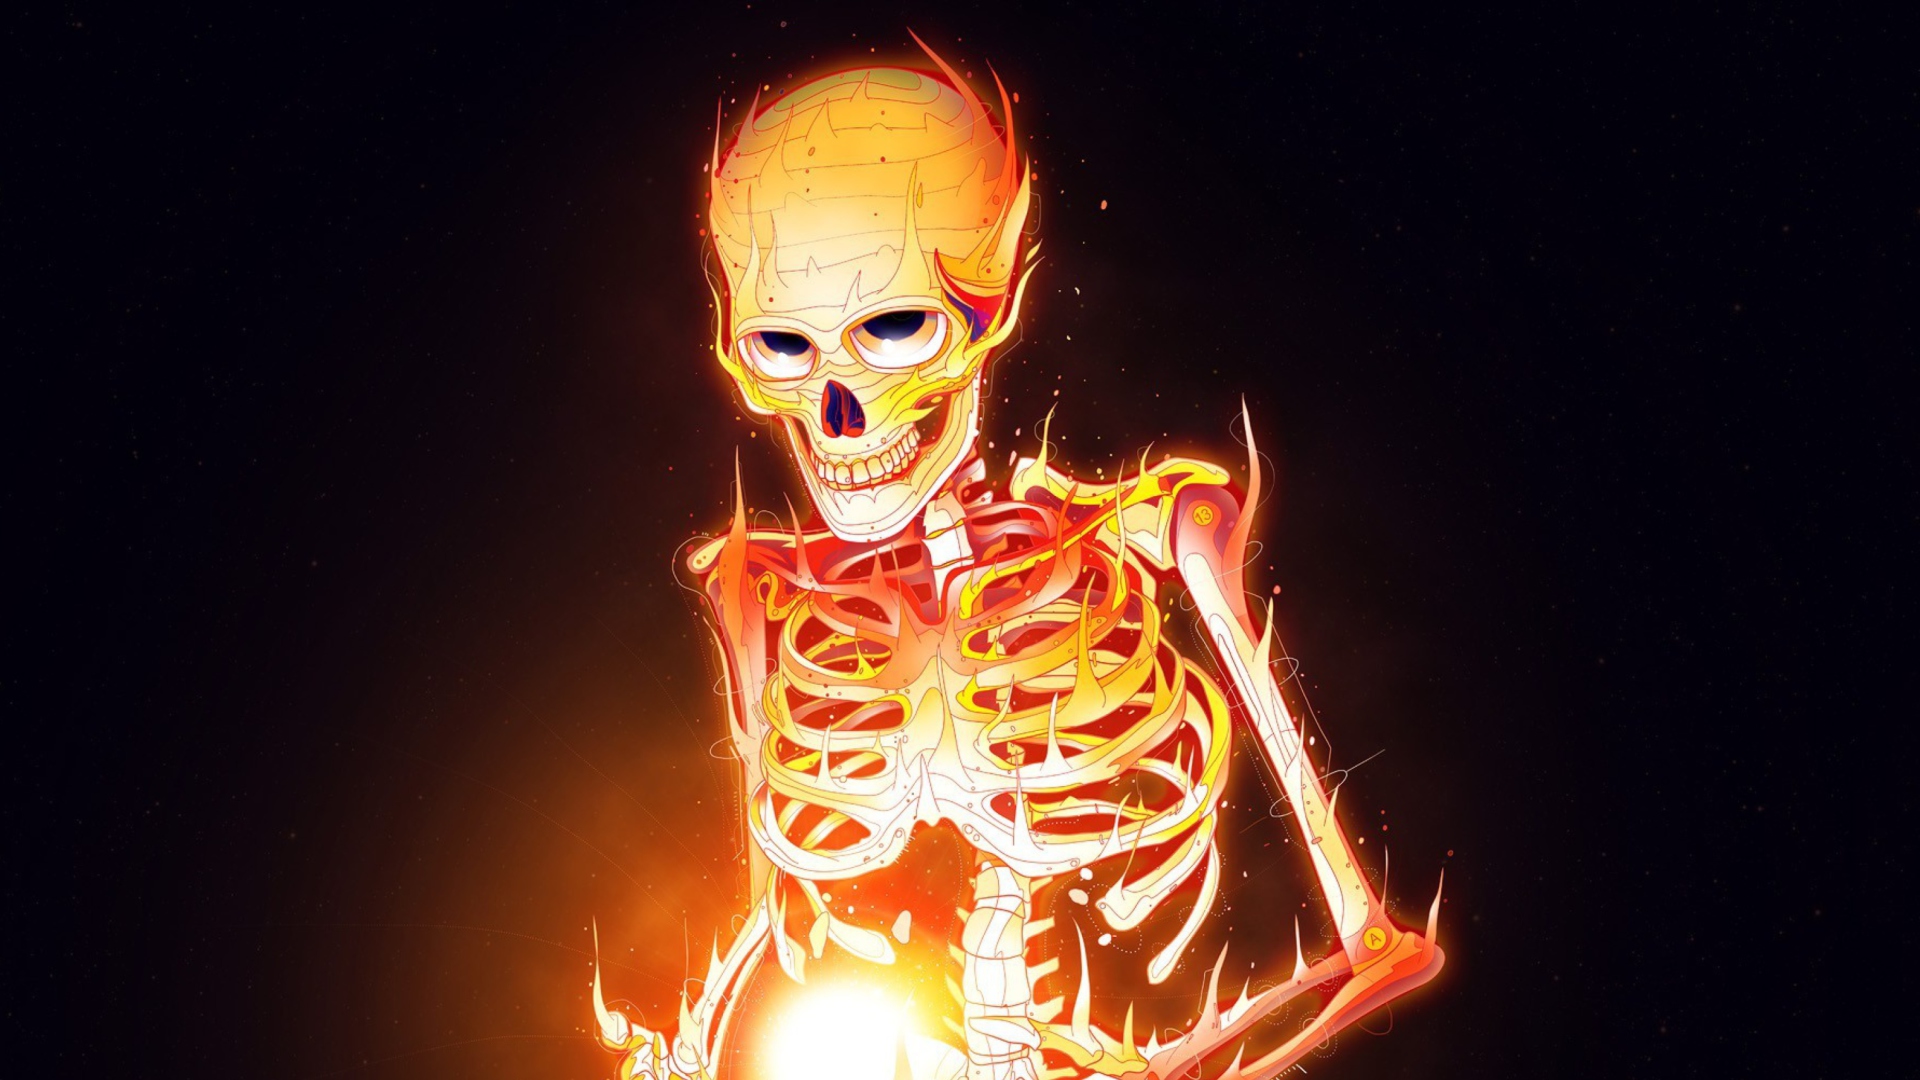 Sfondi Skeleton On Fire 1920x1080